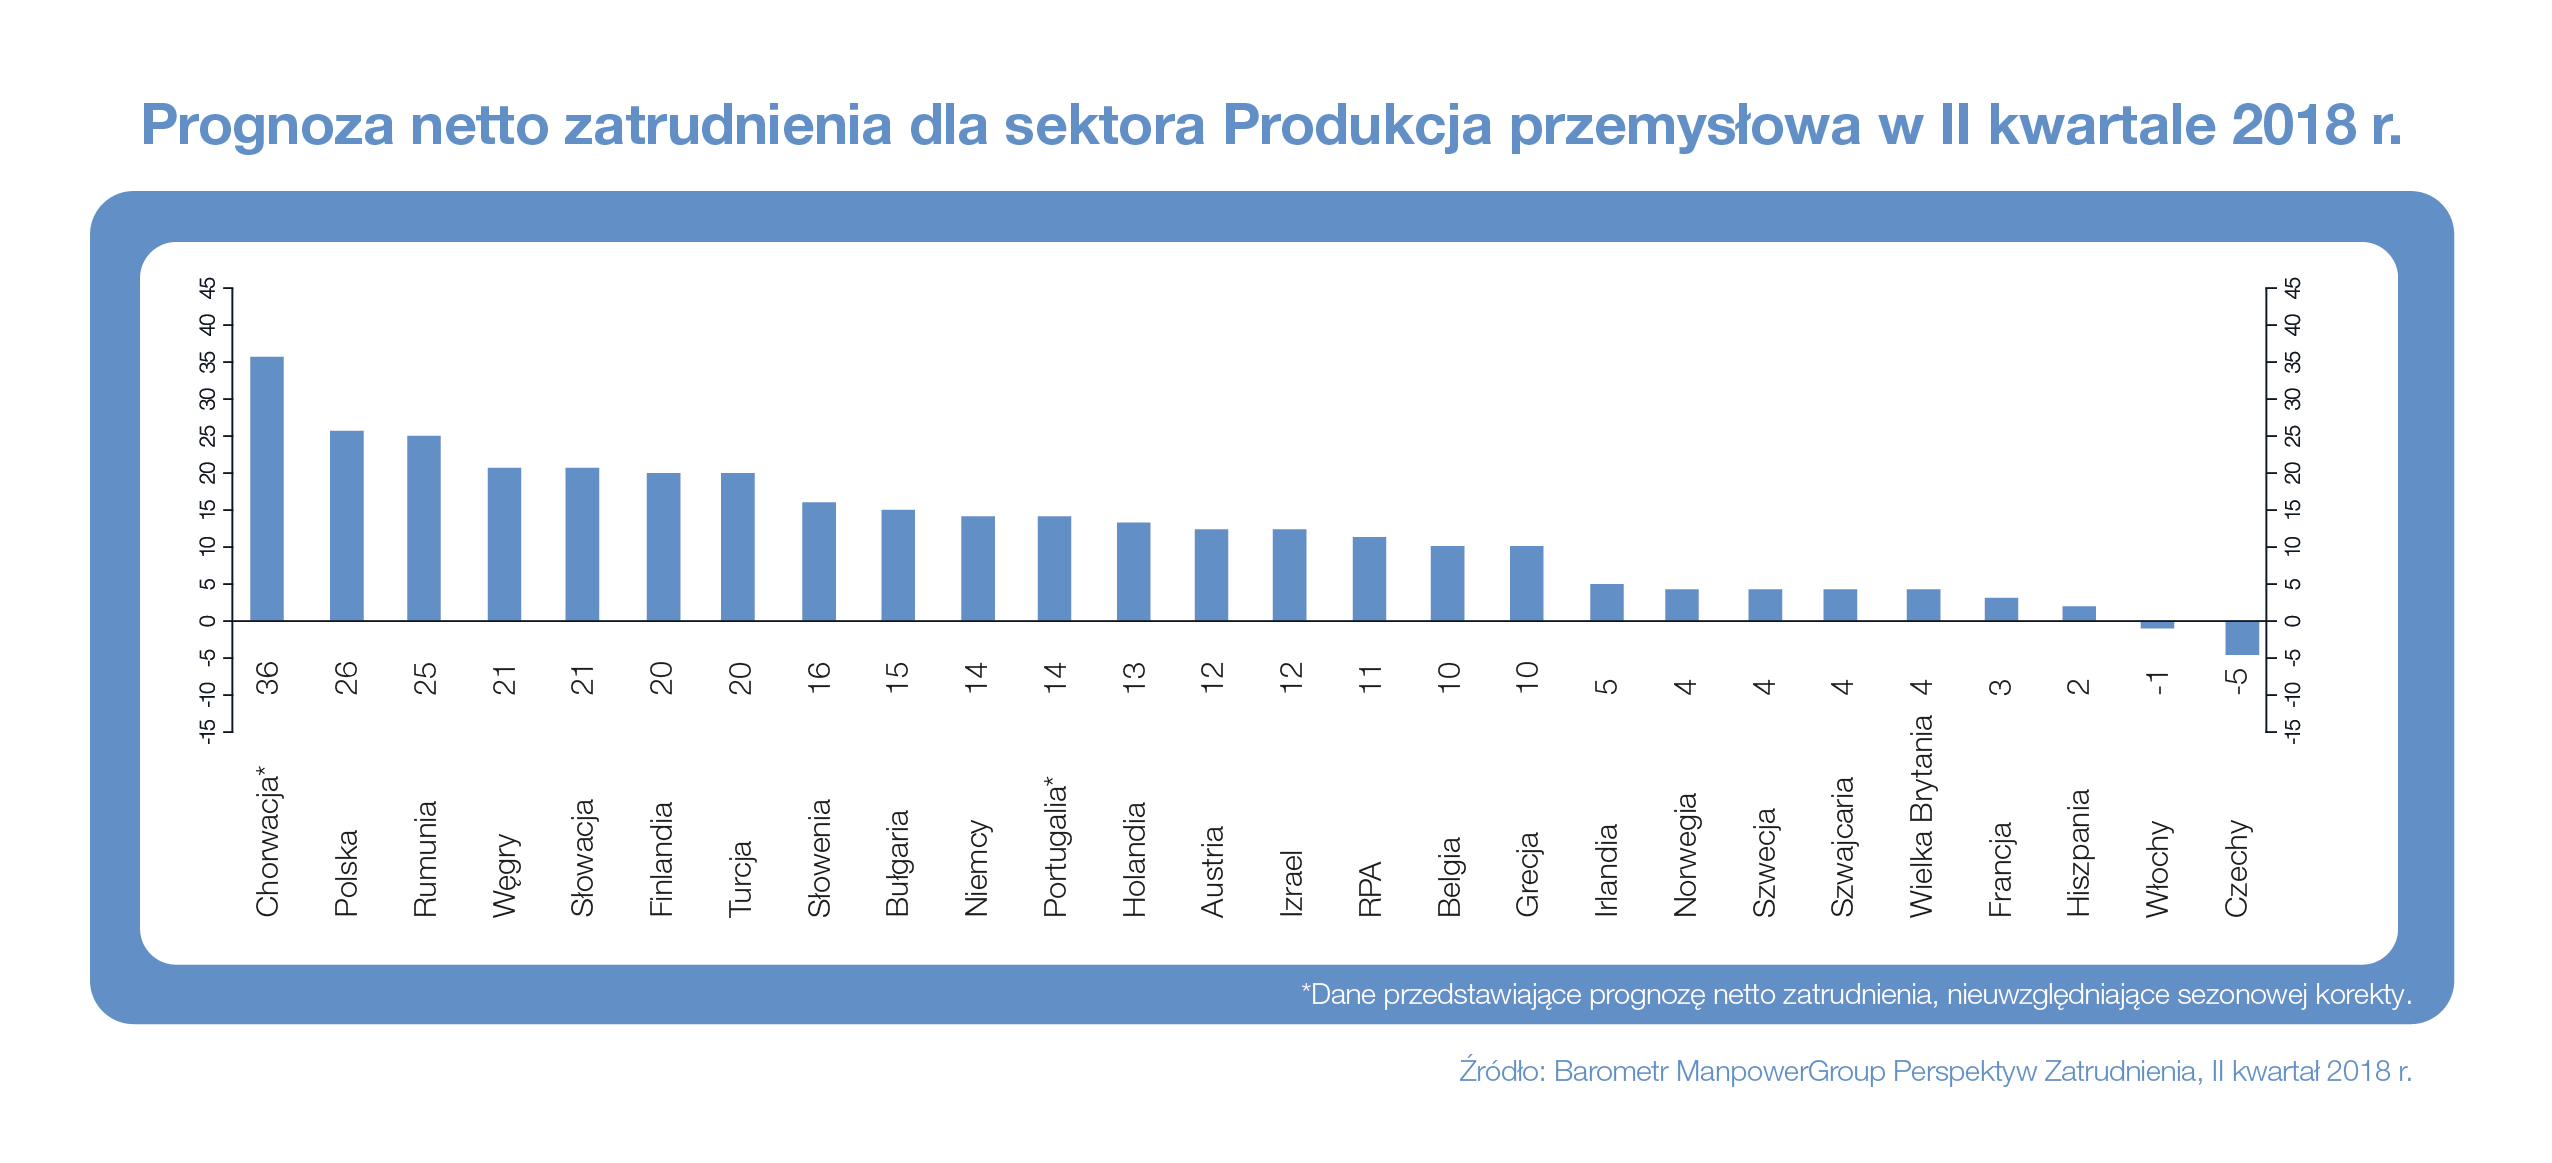 Prognoza netto zatrudnienia dla sektora Produkcja przemysłowa w regionie EMEA w II kwartale 2018 r.